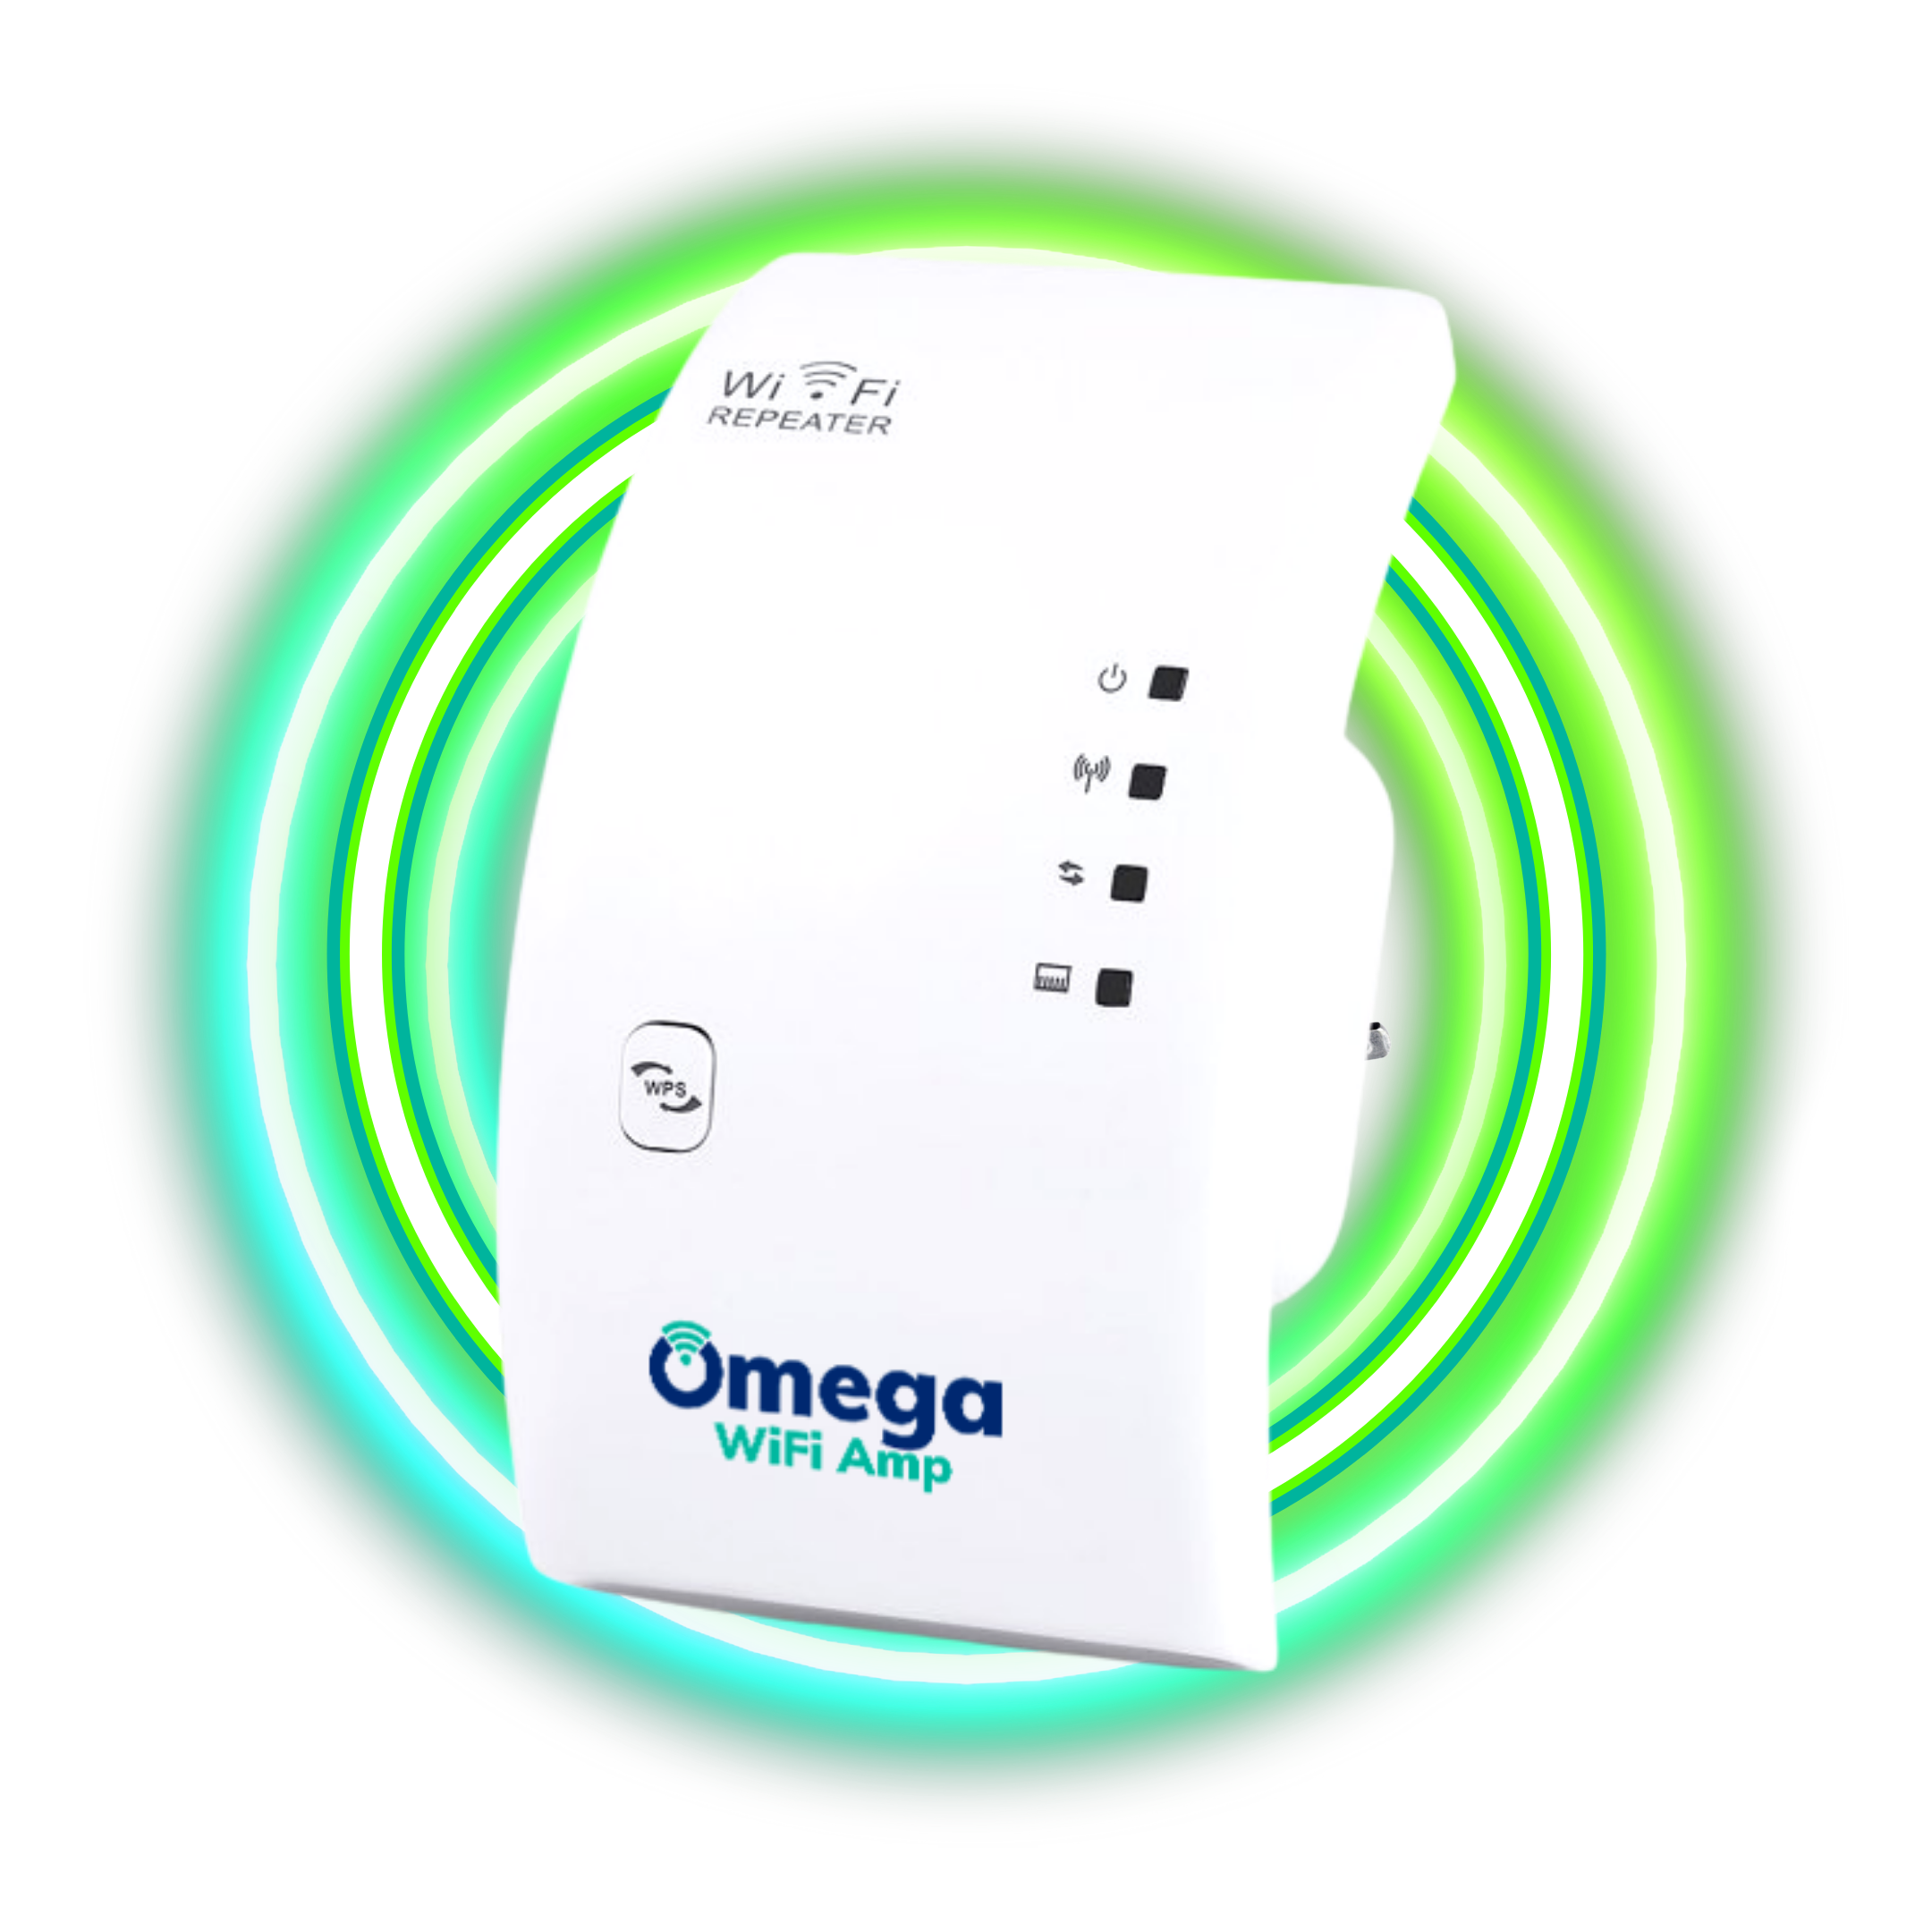 Omega WiFi Amp - EU